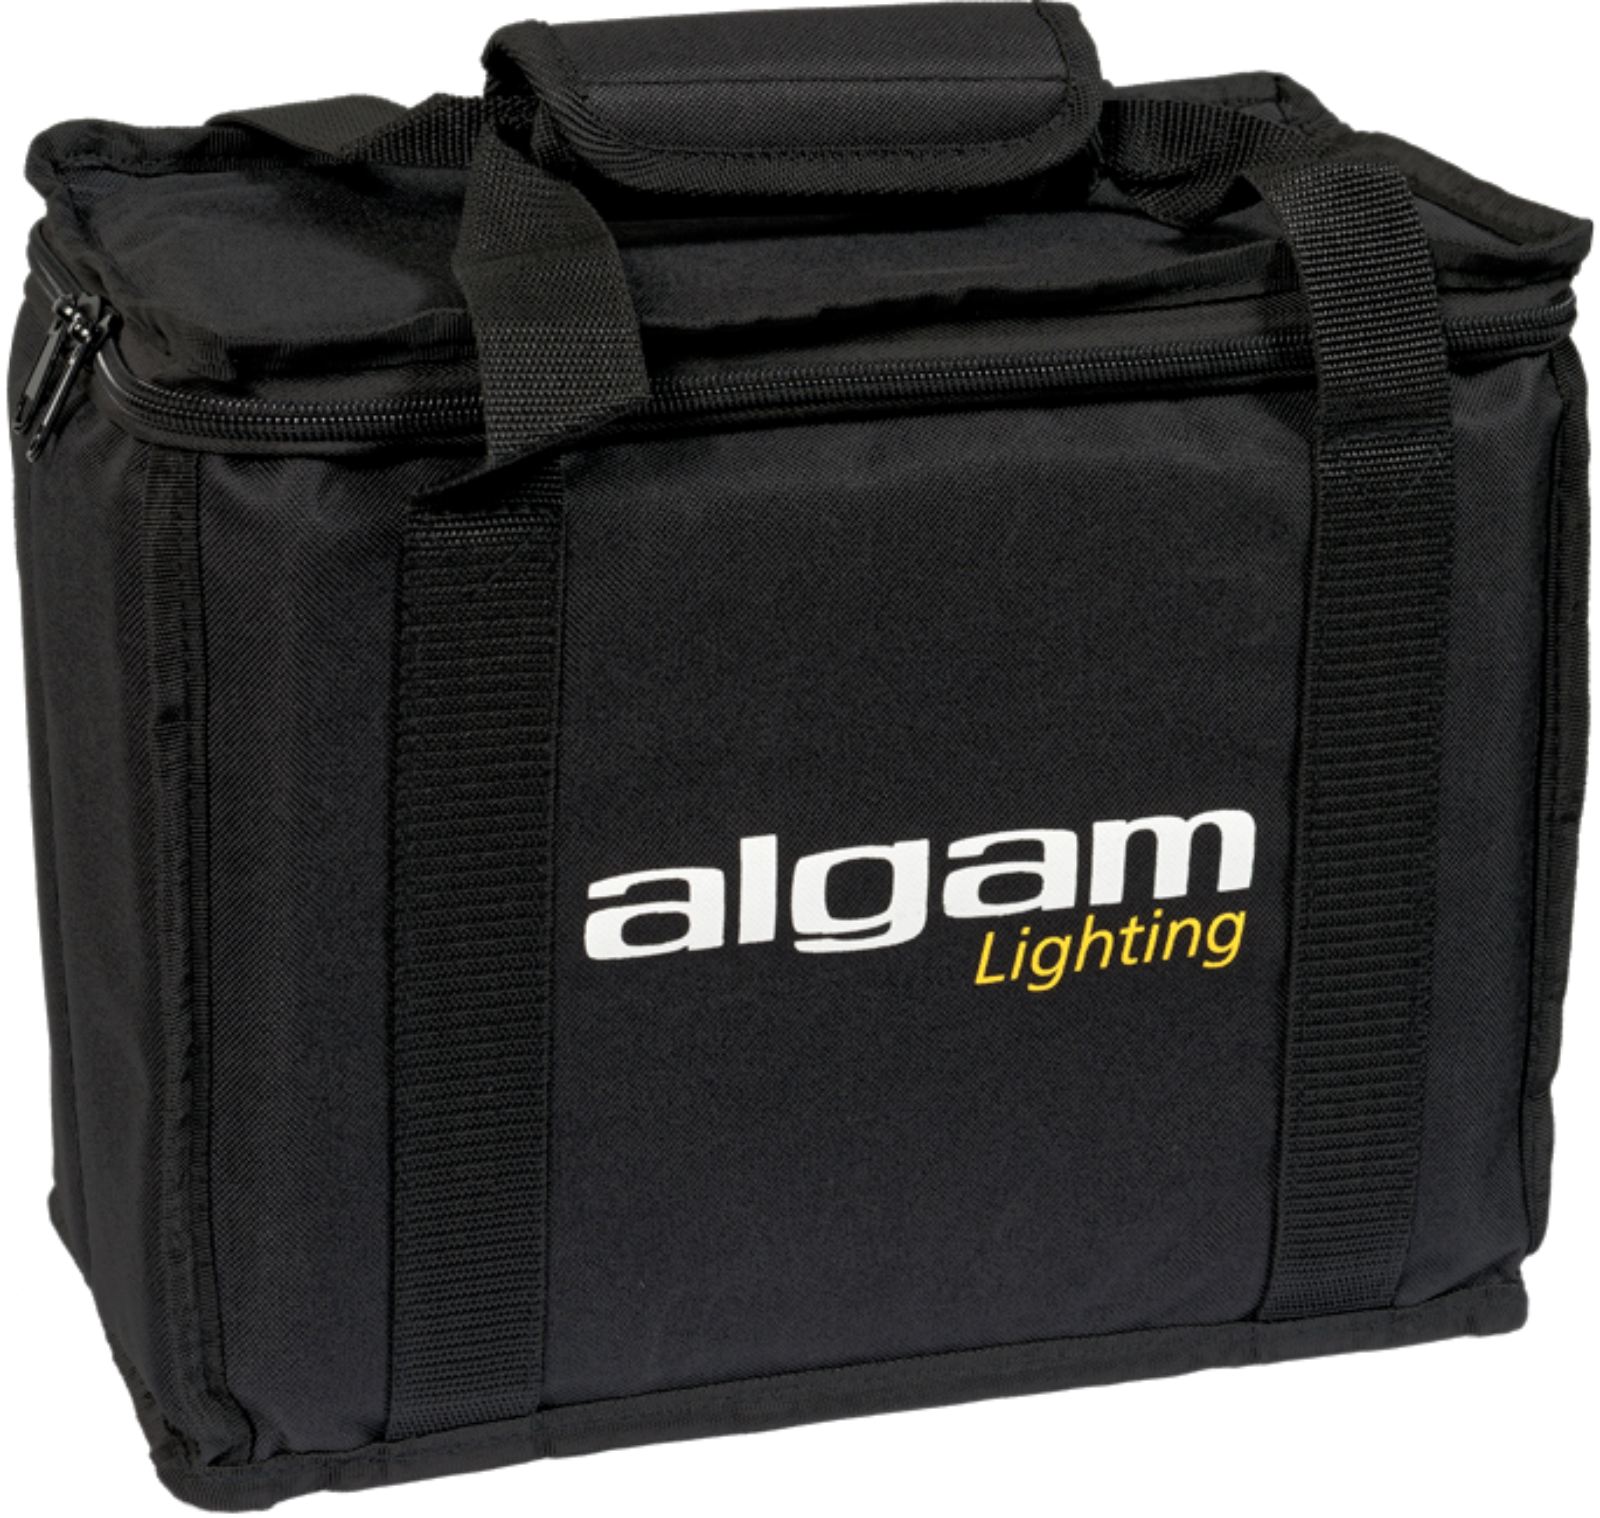 ALGAM LIGHTING BAG-32X17X25